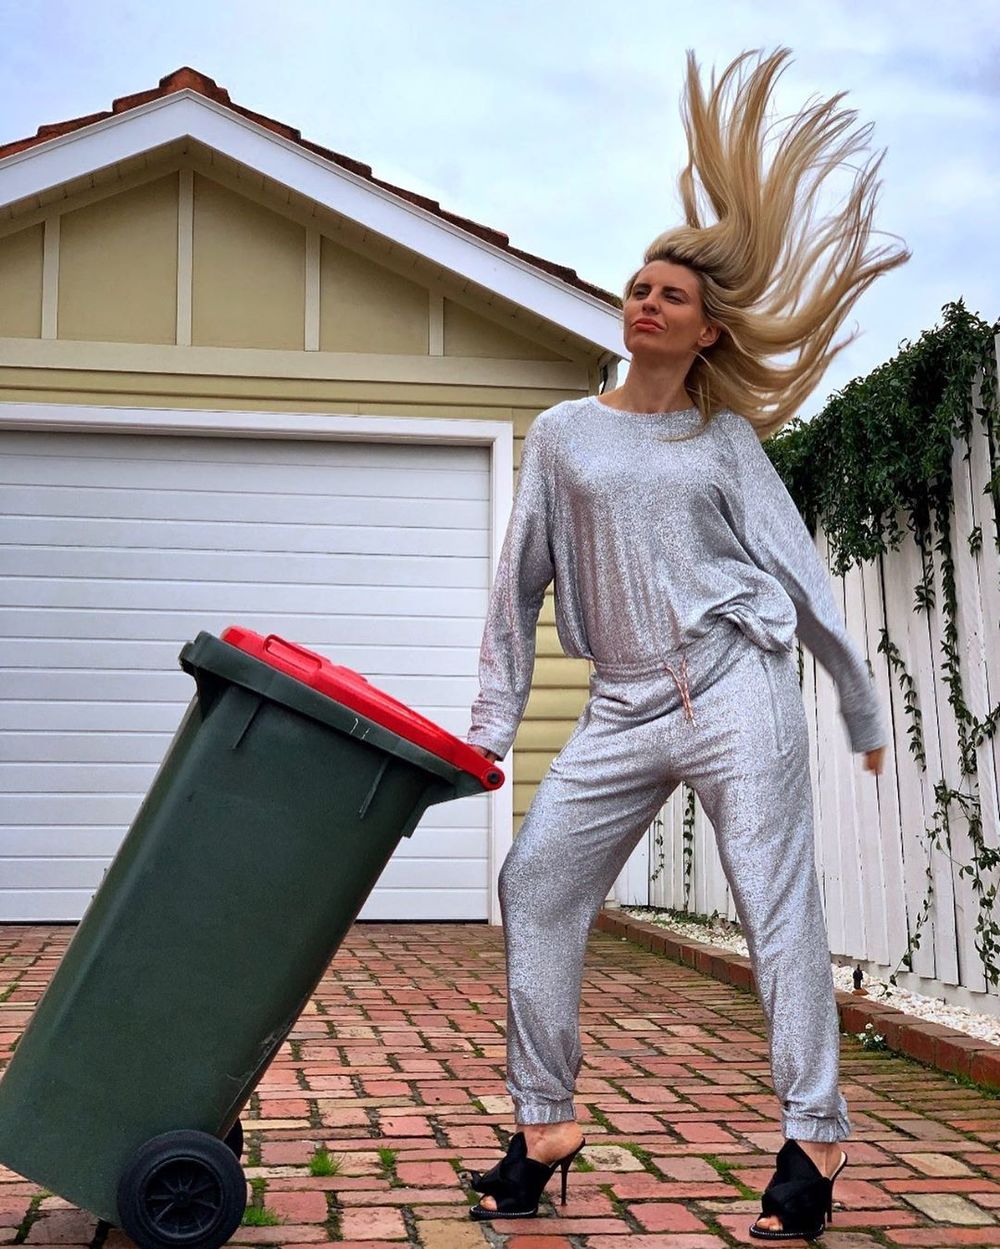  
Cô nàng này xem thùng rác như một đạo cụ để chụp hình thời trang. (Ảnh: Instagram nhân vật)